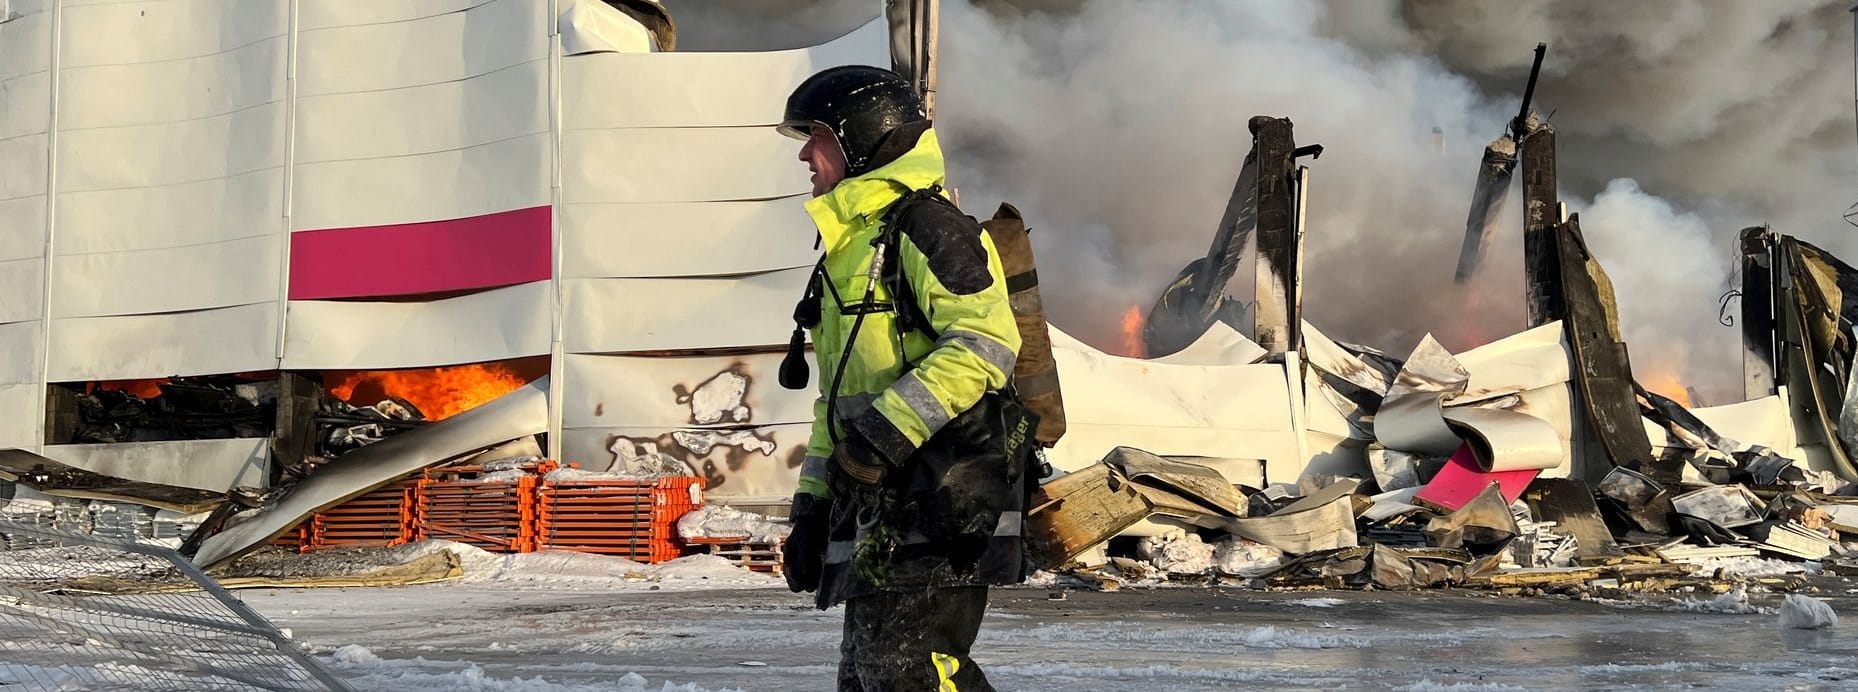 Feuerwehrmann vor dem abbrennenden Lagerhaus des Wildberriesversandhandels in St. Petersburg